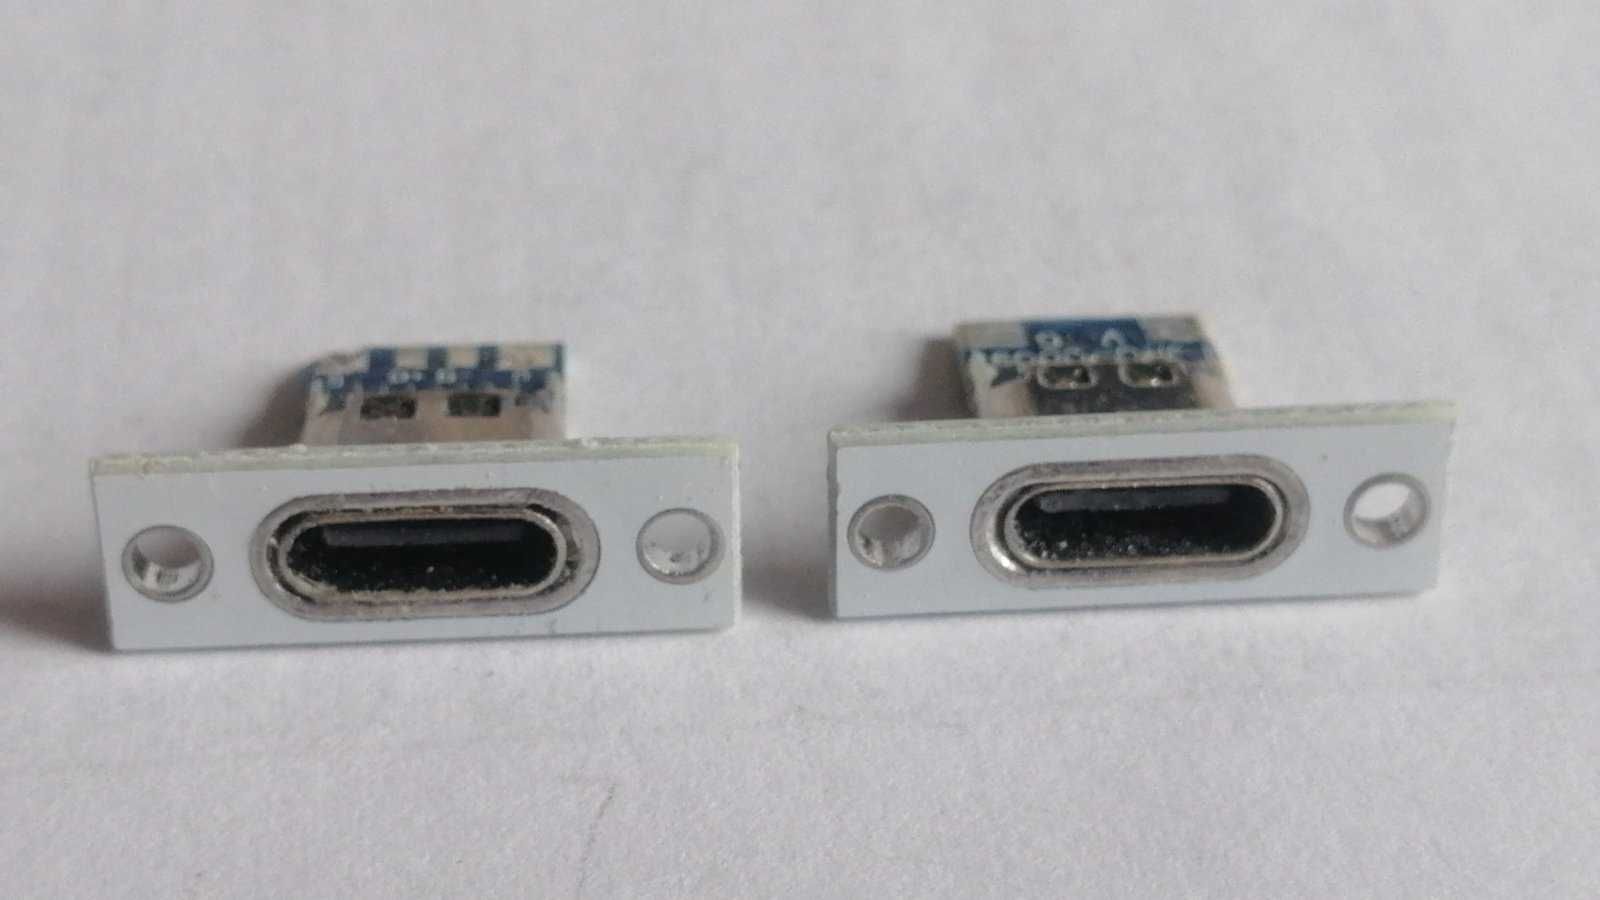 USB 3.1 Type-C конектор, переходник, роз'єм, разъем